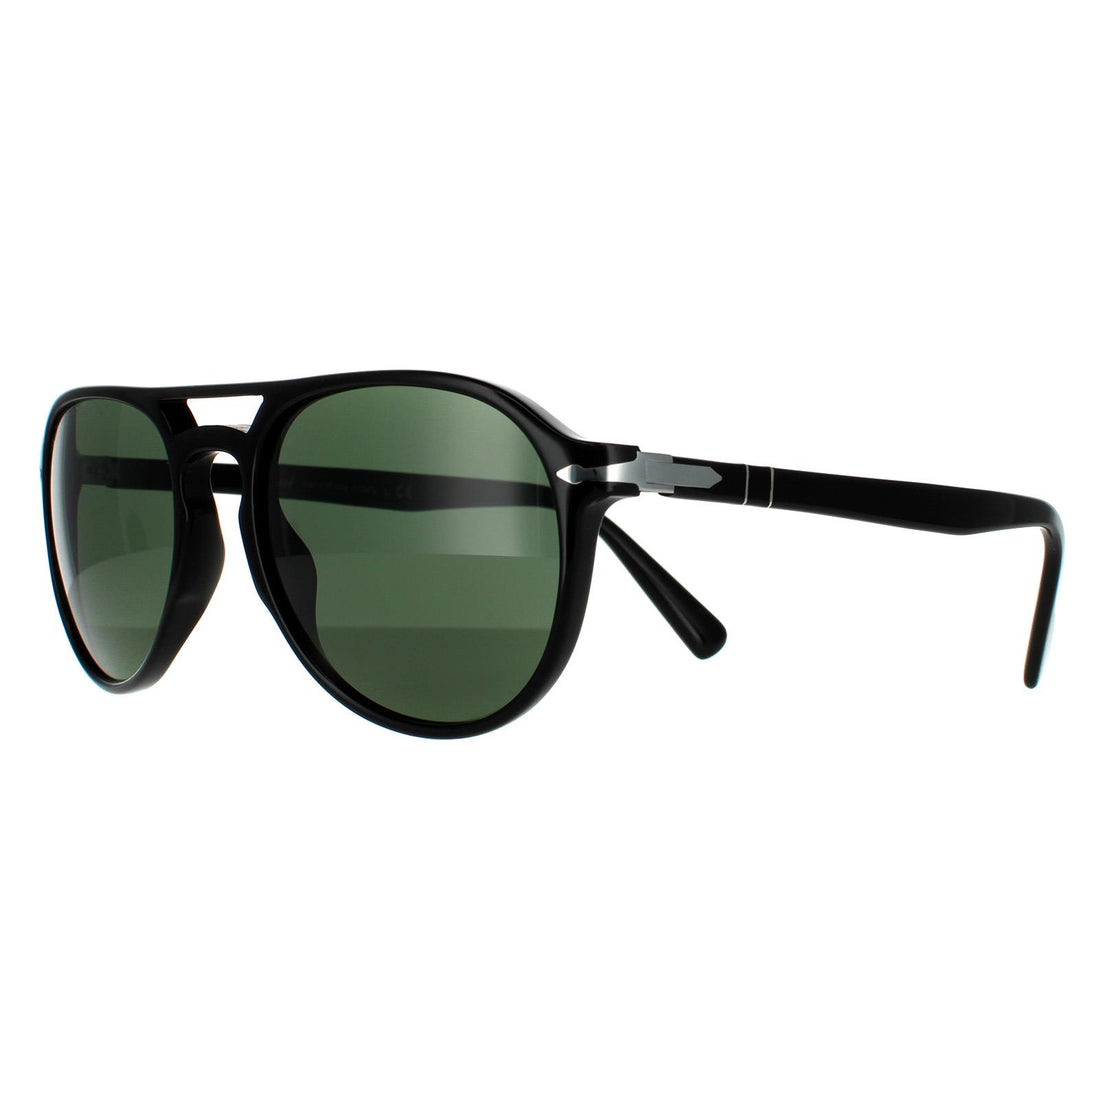 Persol PO3235S Sunglasses